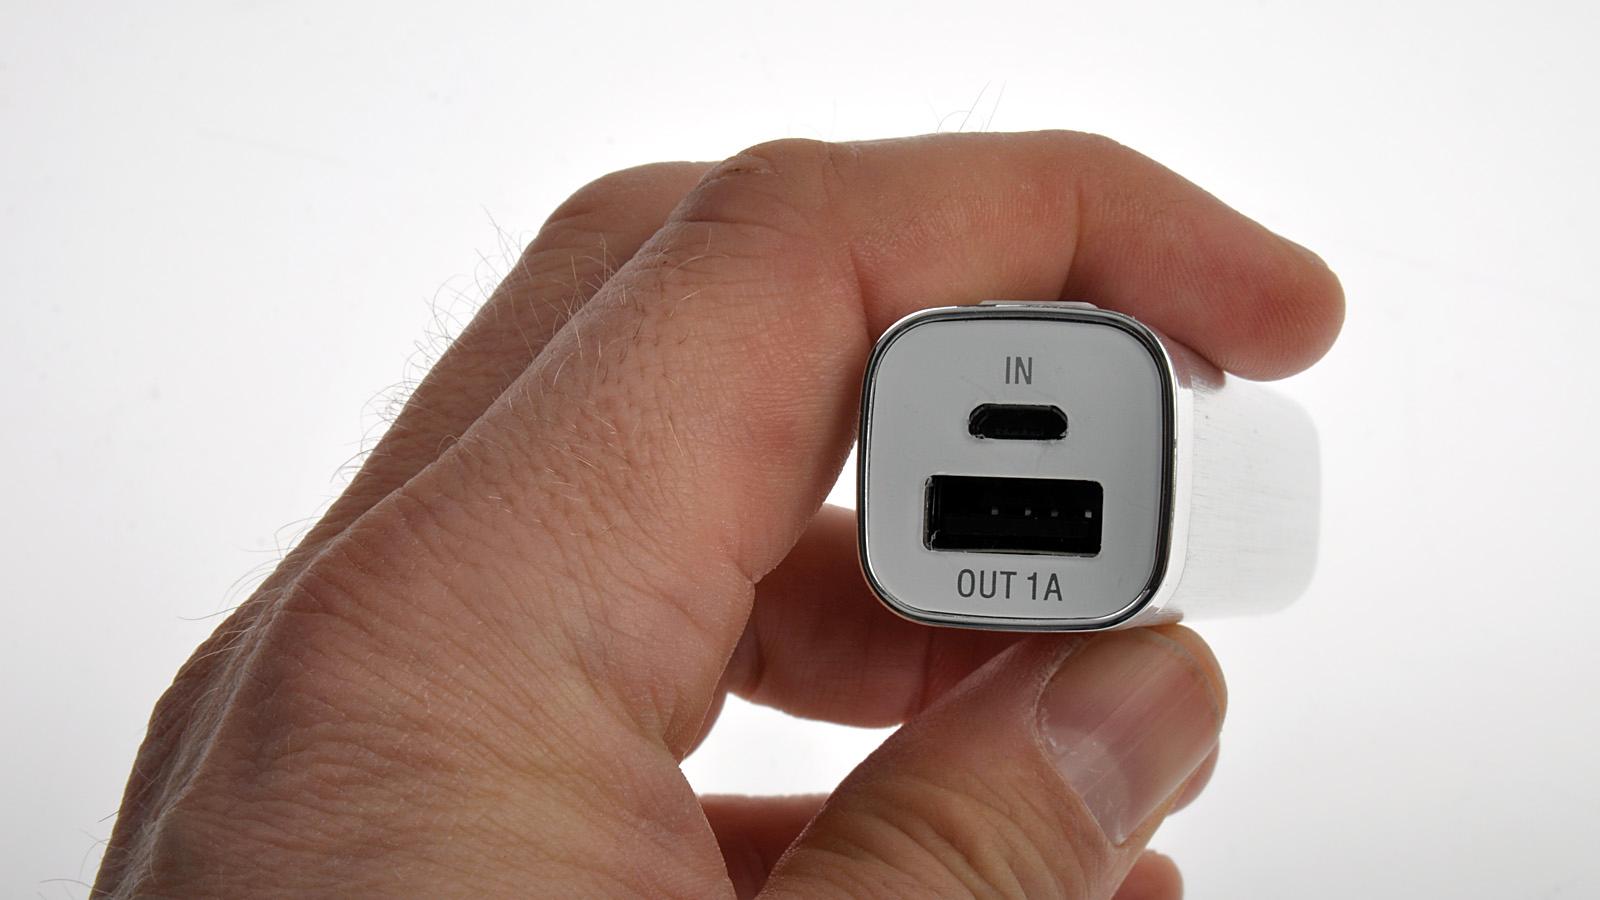 USB-uttaket for lading er på 1 ampere. Kjøper du en av de større laderne fra PNY, får du også et 2,1 ampere-uttak. .